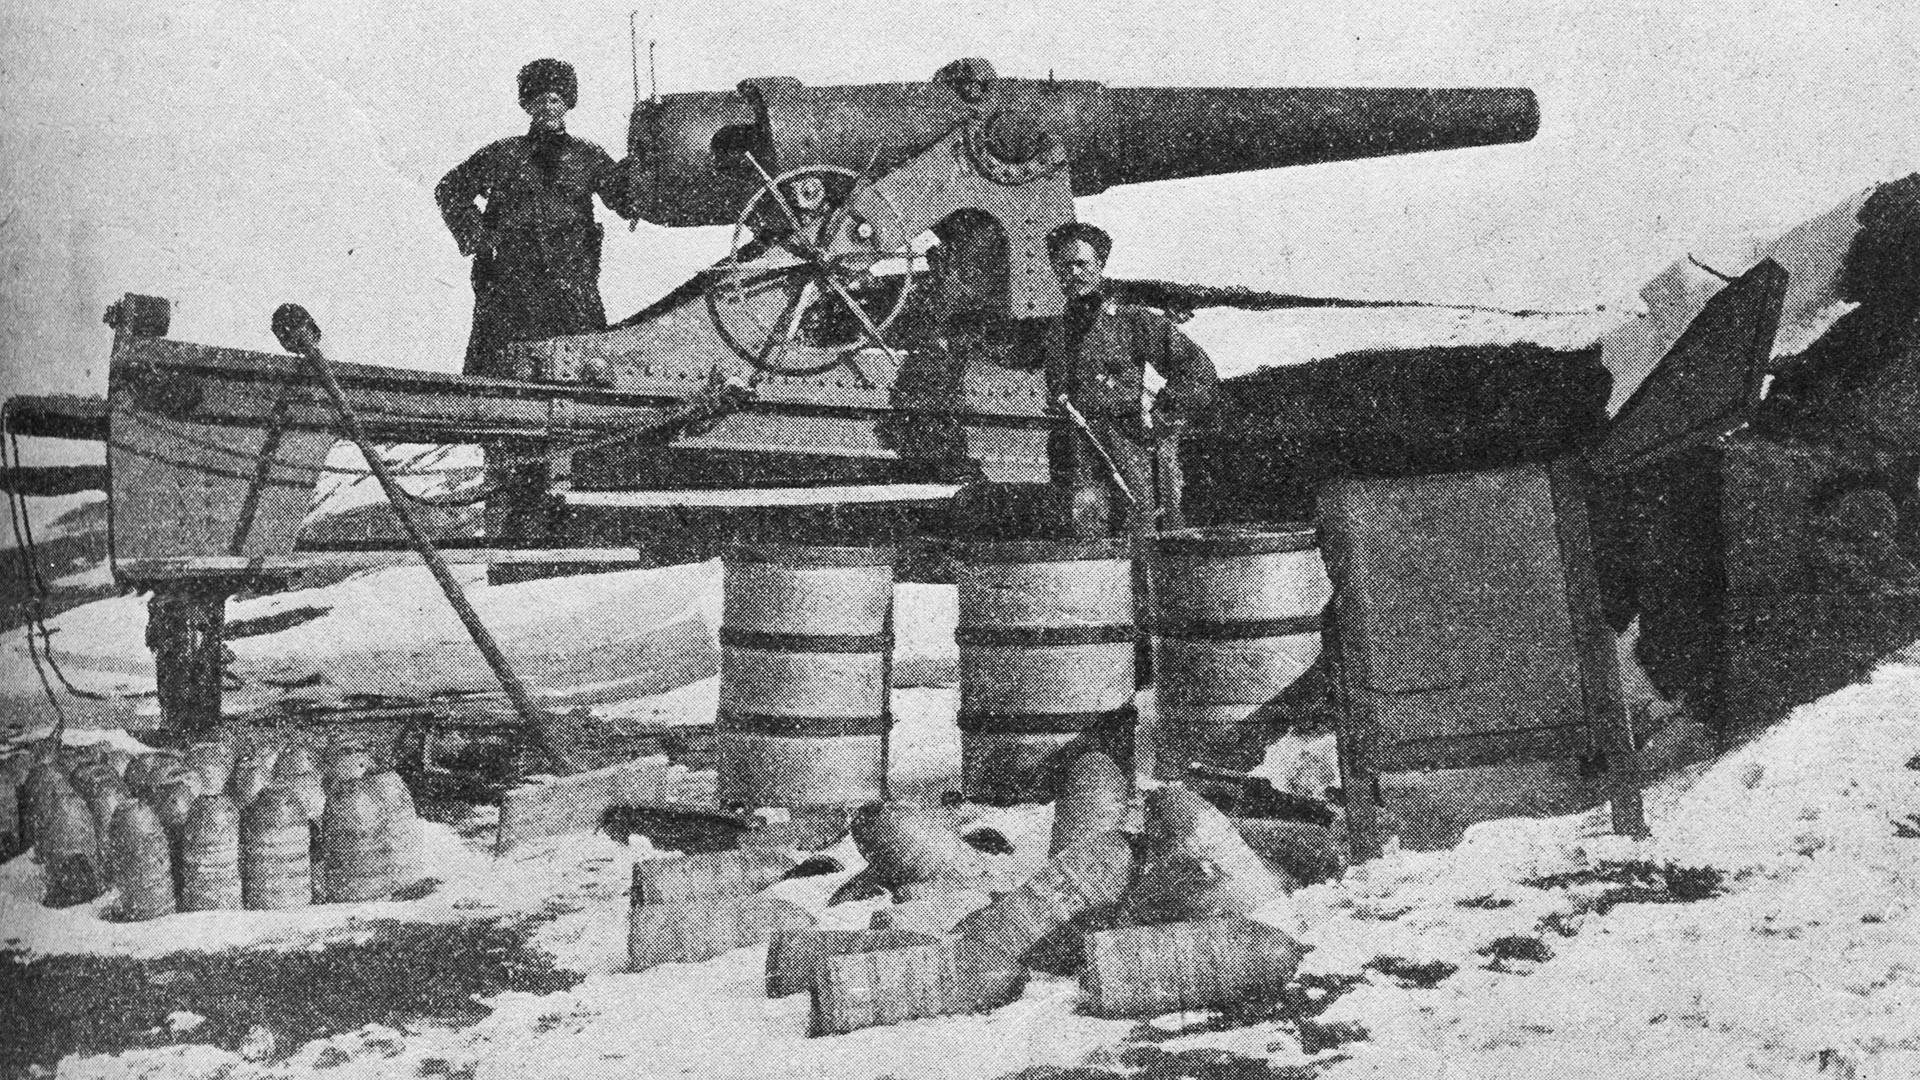 Trofejno tursko oruđe u Erzurumu, koji su ruske trupe zauzele. Početak 1916.
